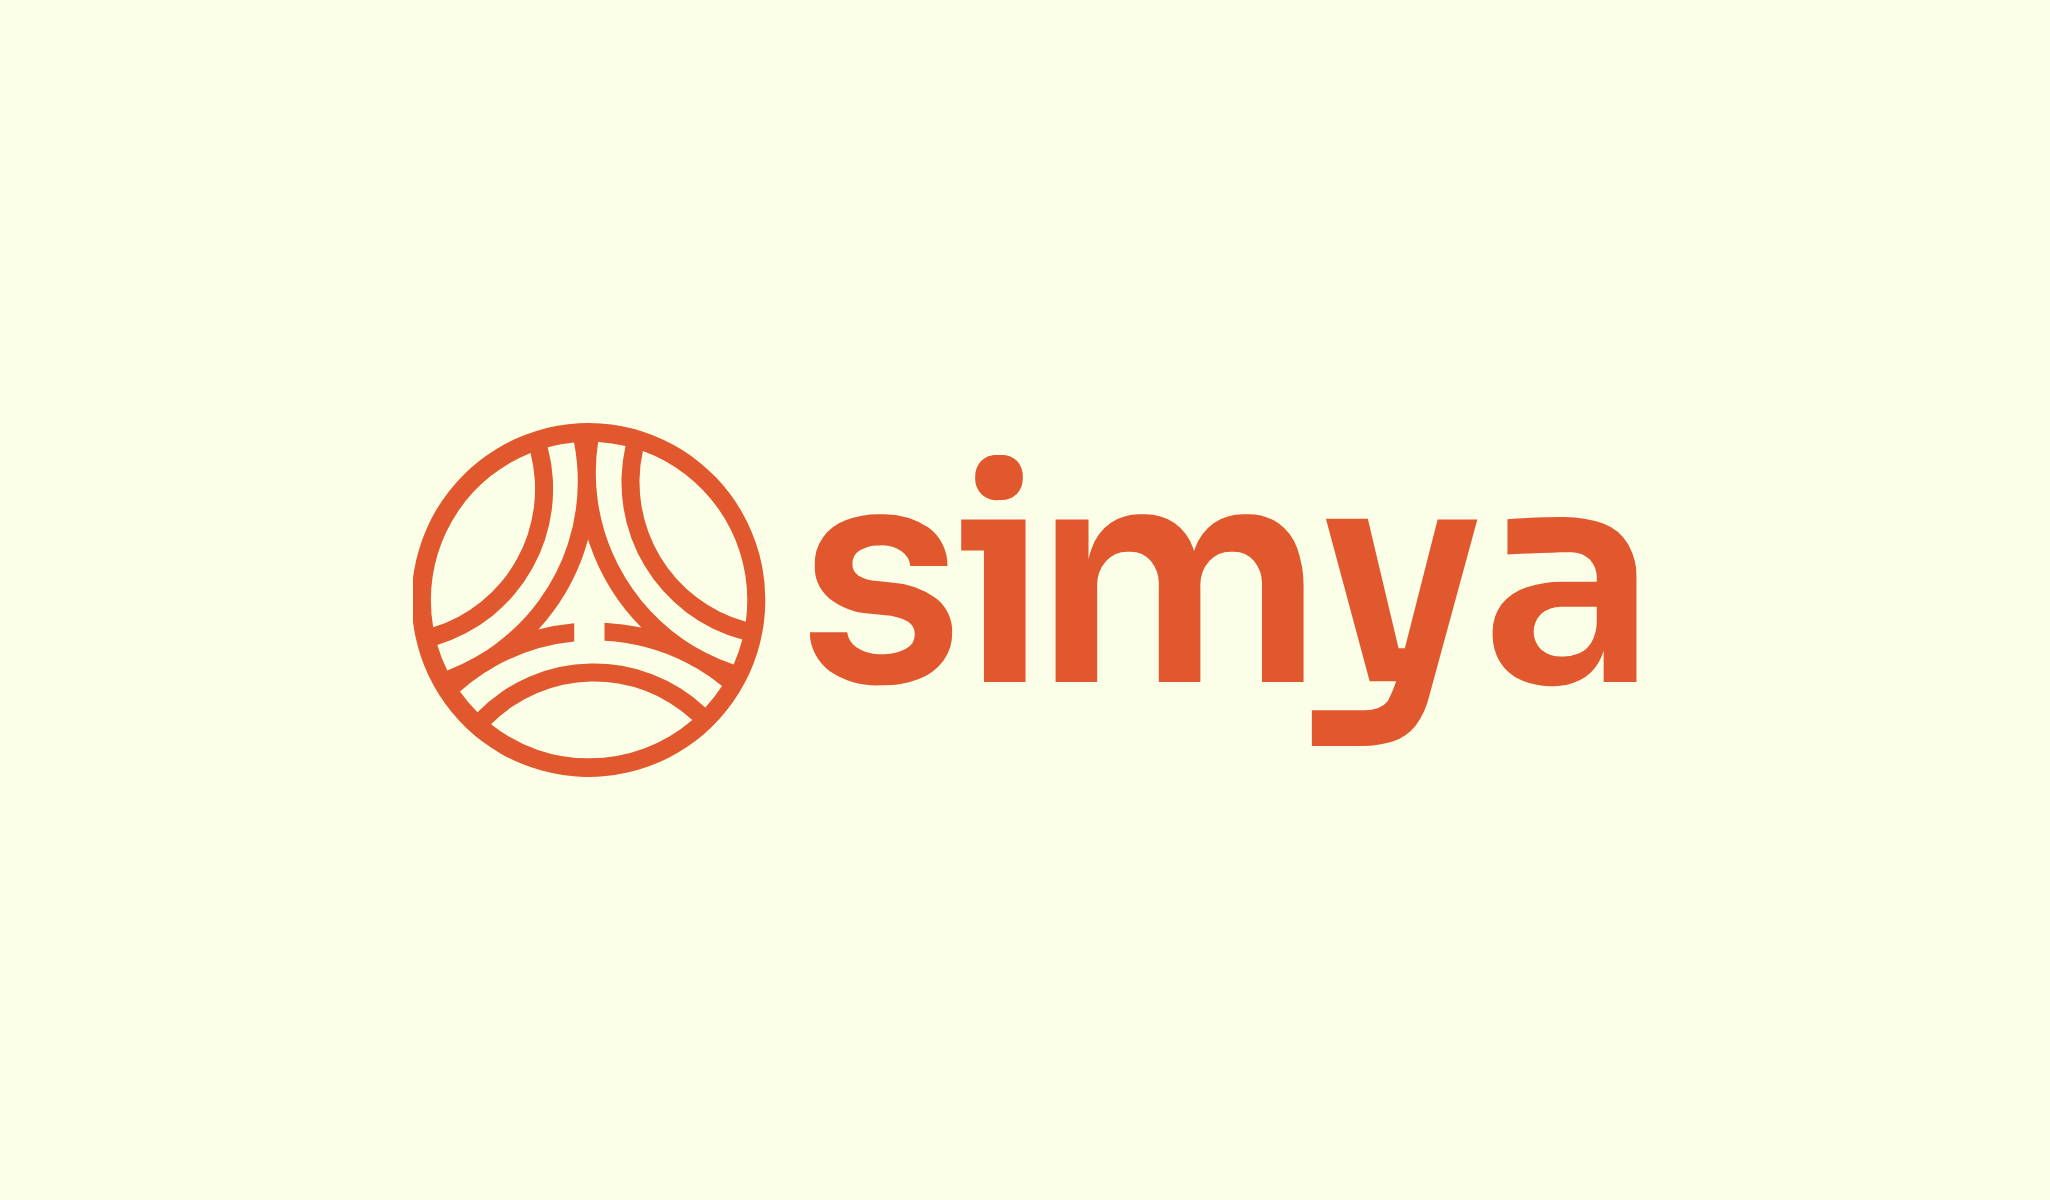 Simya VC